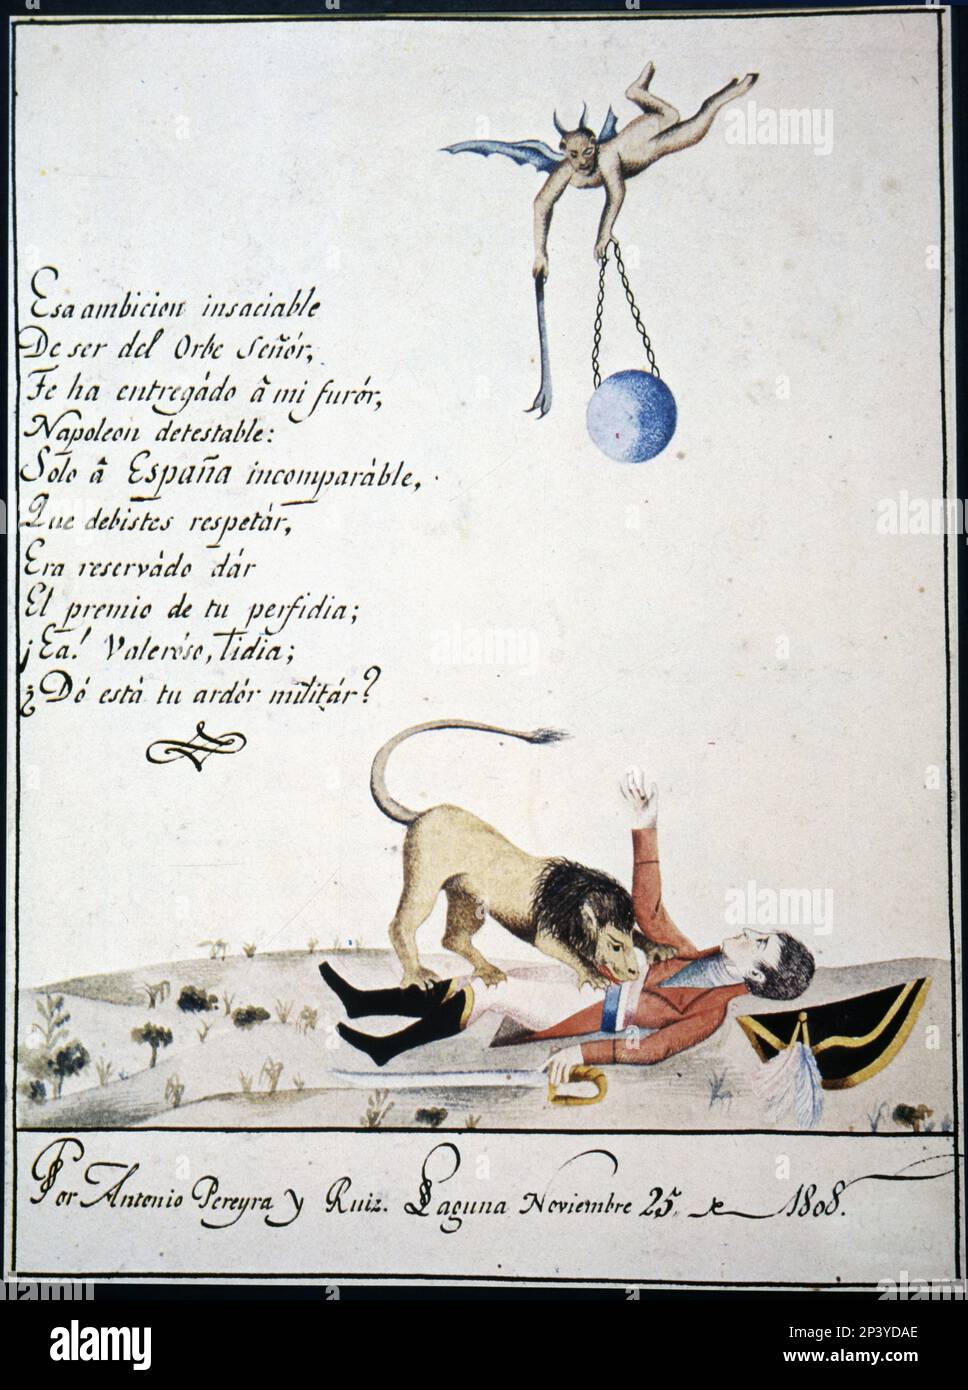 Patriotische Zeichnung mit Allegorien gegen Napoleon. Hergestellt 1808 auf den Kanarischen Inseln. Stockfoto